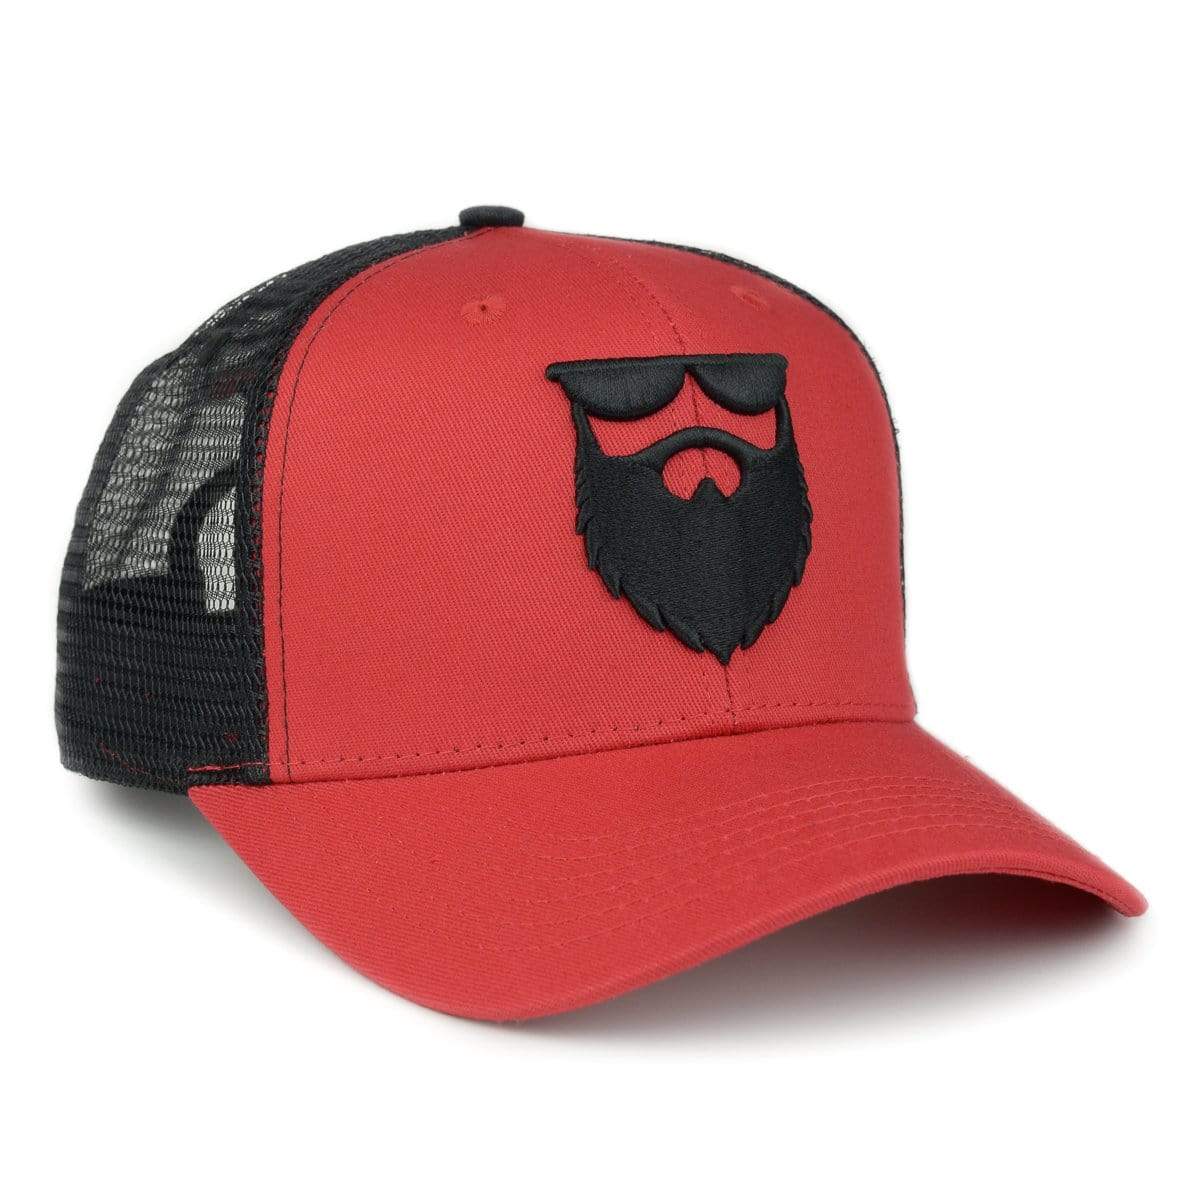 OG Beard Logo Mesh Trucker - Red/Black - No Shave Life